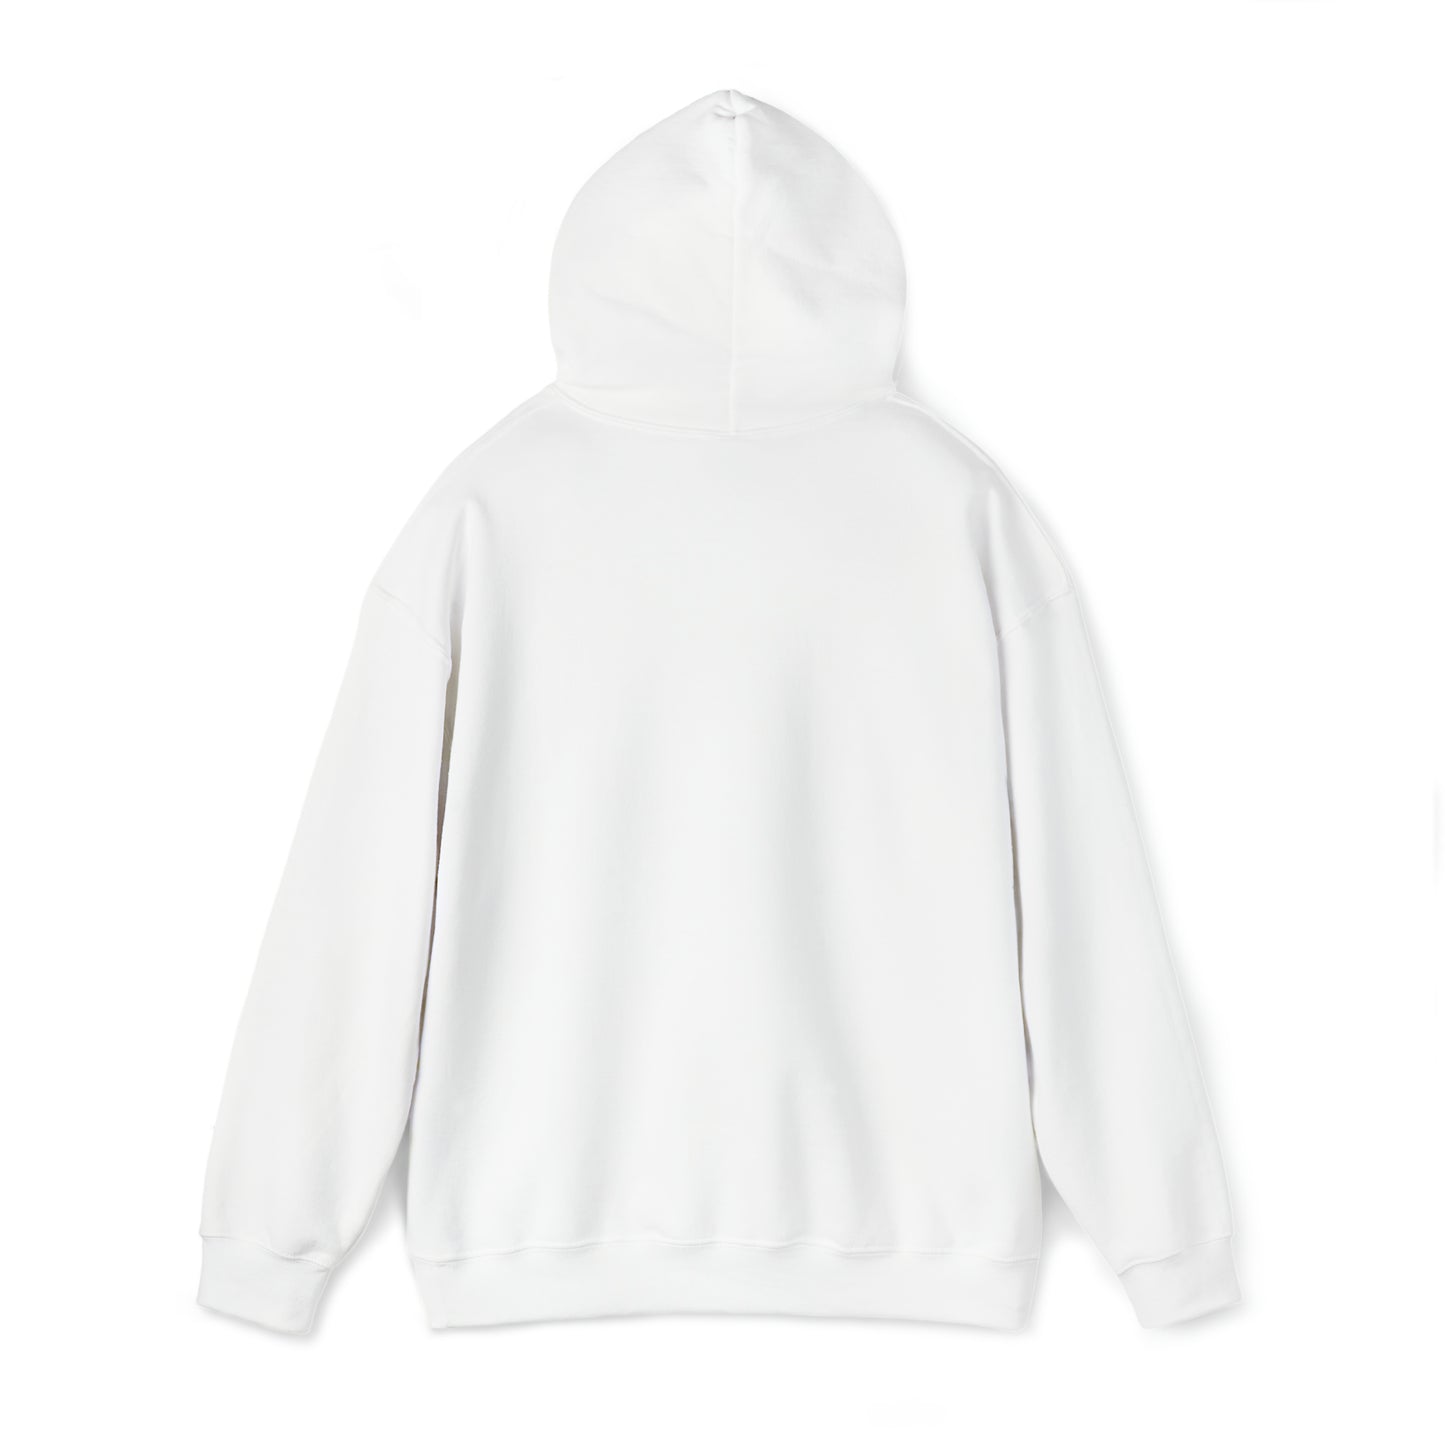 Fancy Unisex Hooded Sweatshirt